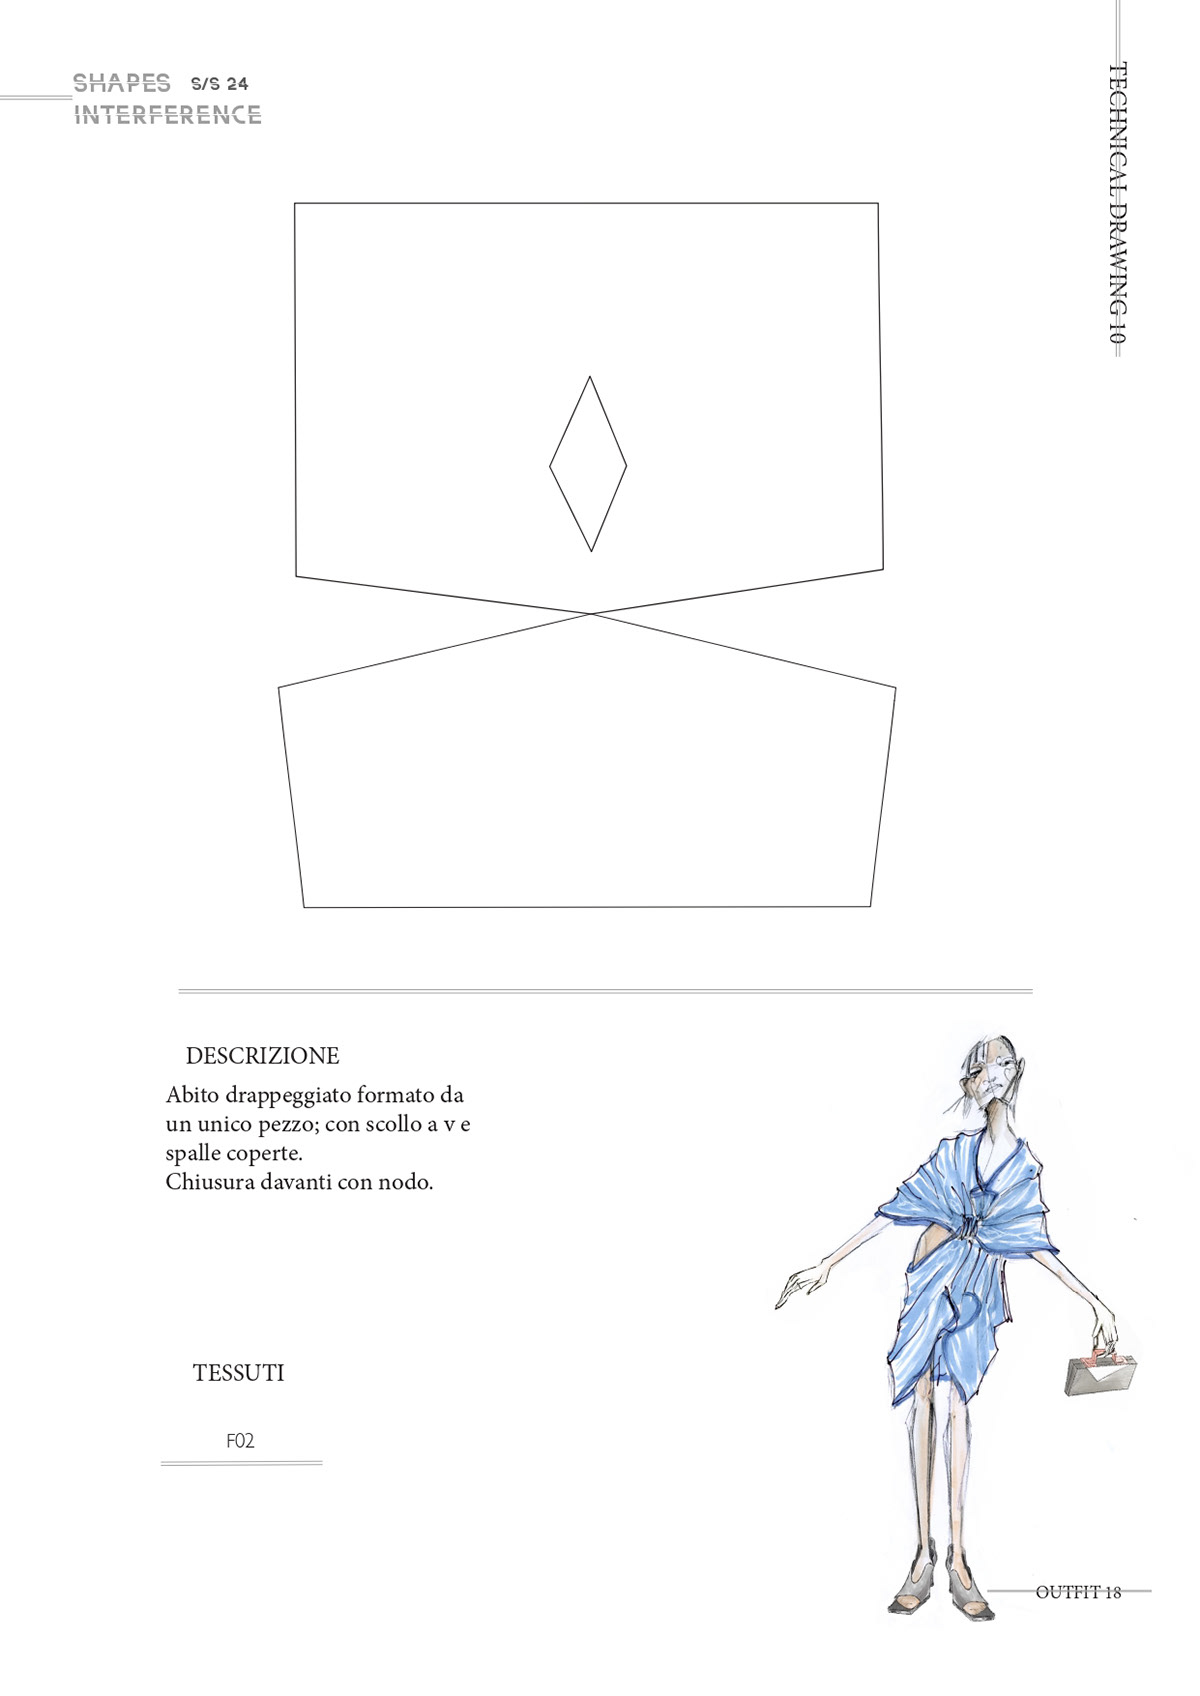 sketch ILLUSTRATION  portfolio designer shapes geometric minimal india culture